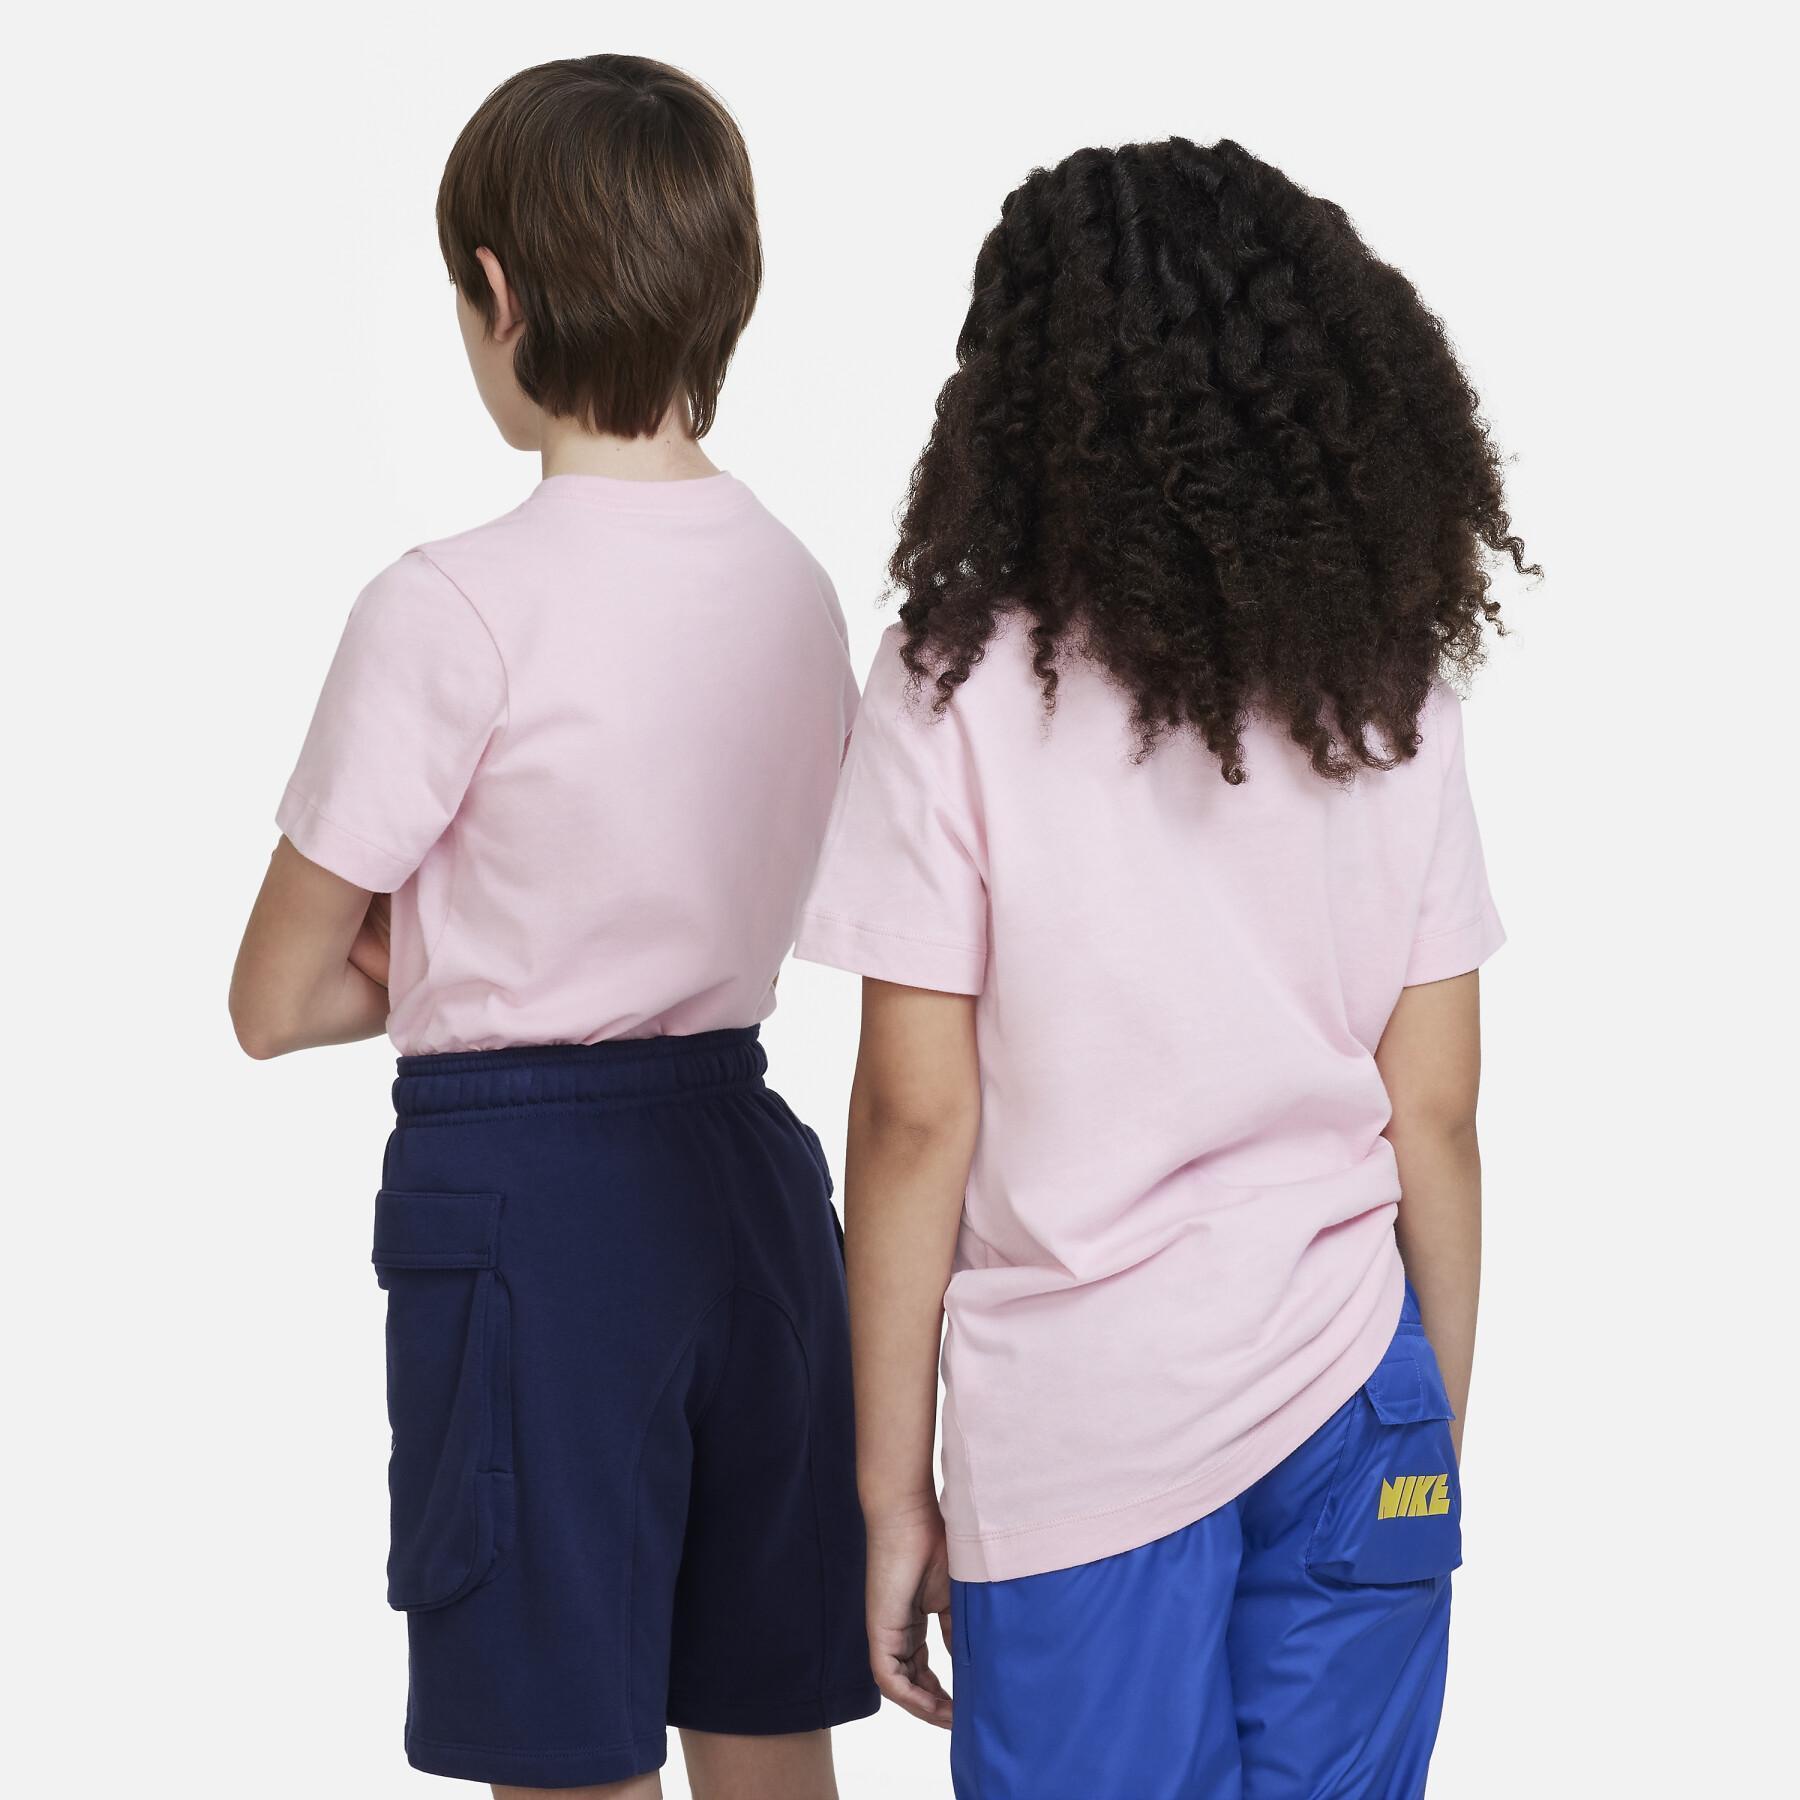 Maglietta per bambini Nike Core Brandmark 3